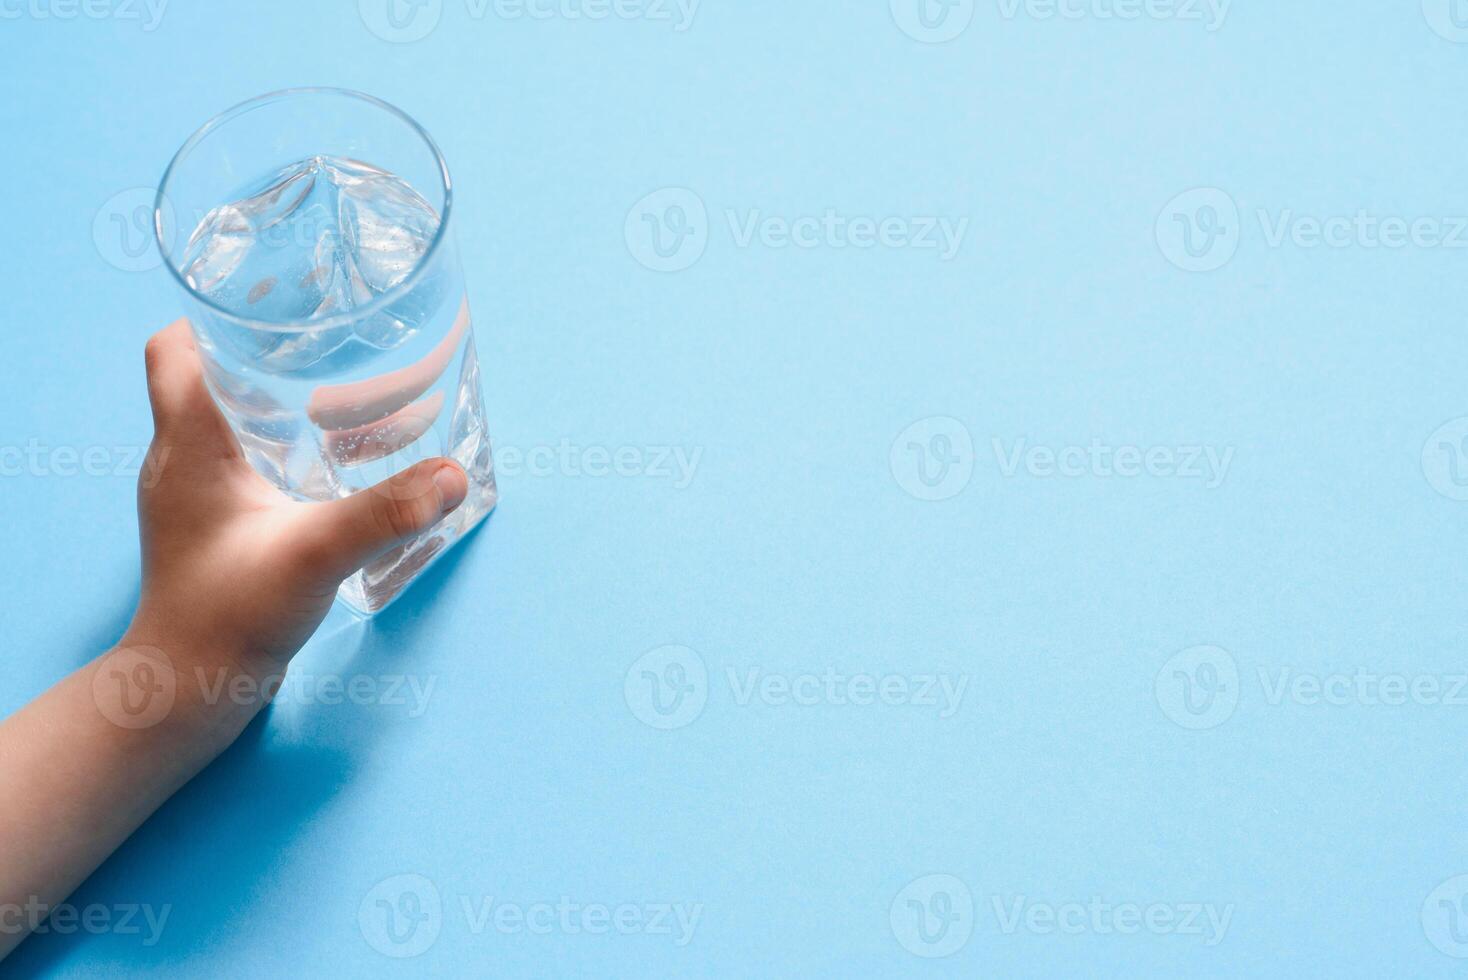 enfants main en portant une verre de pur l'eau sur une bleu arrière-plan, copie espace photo